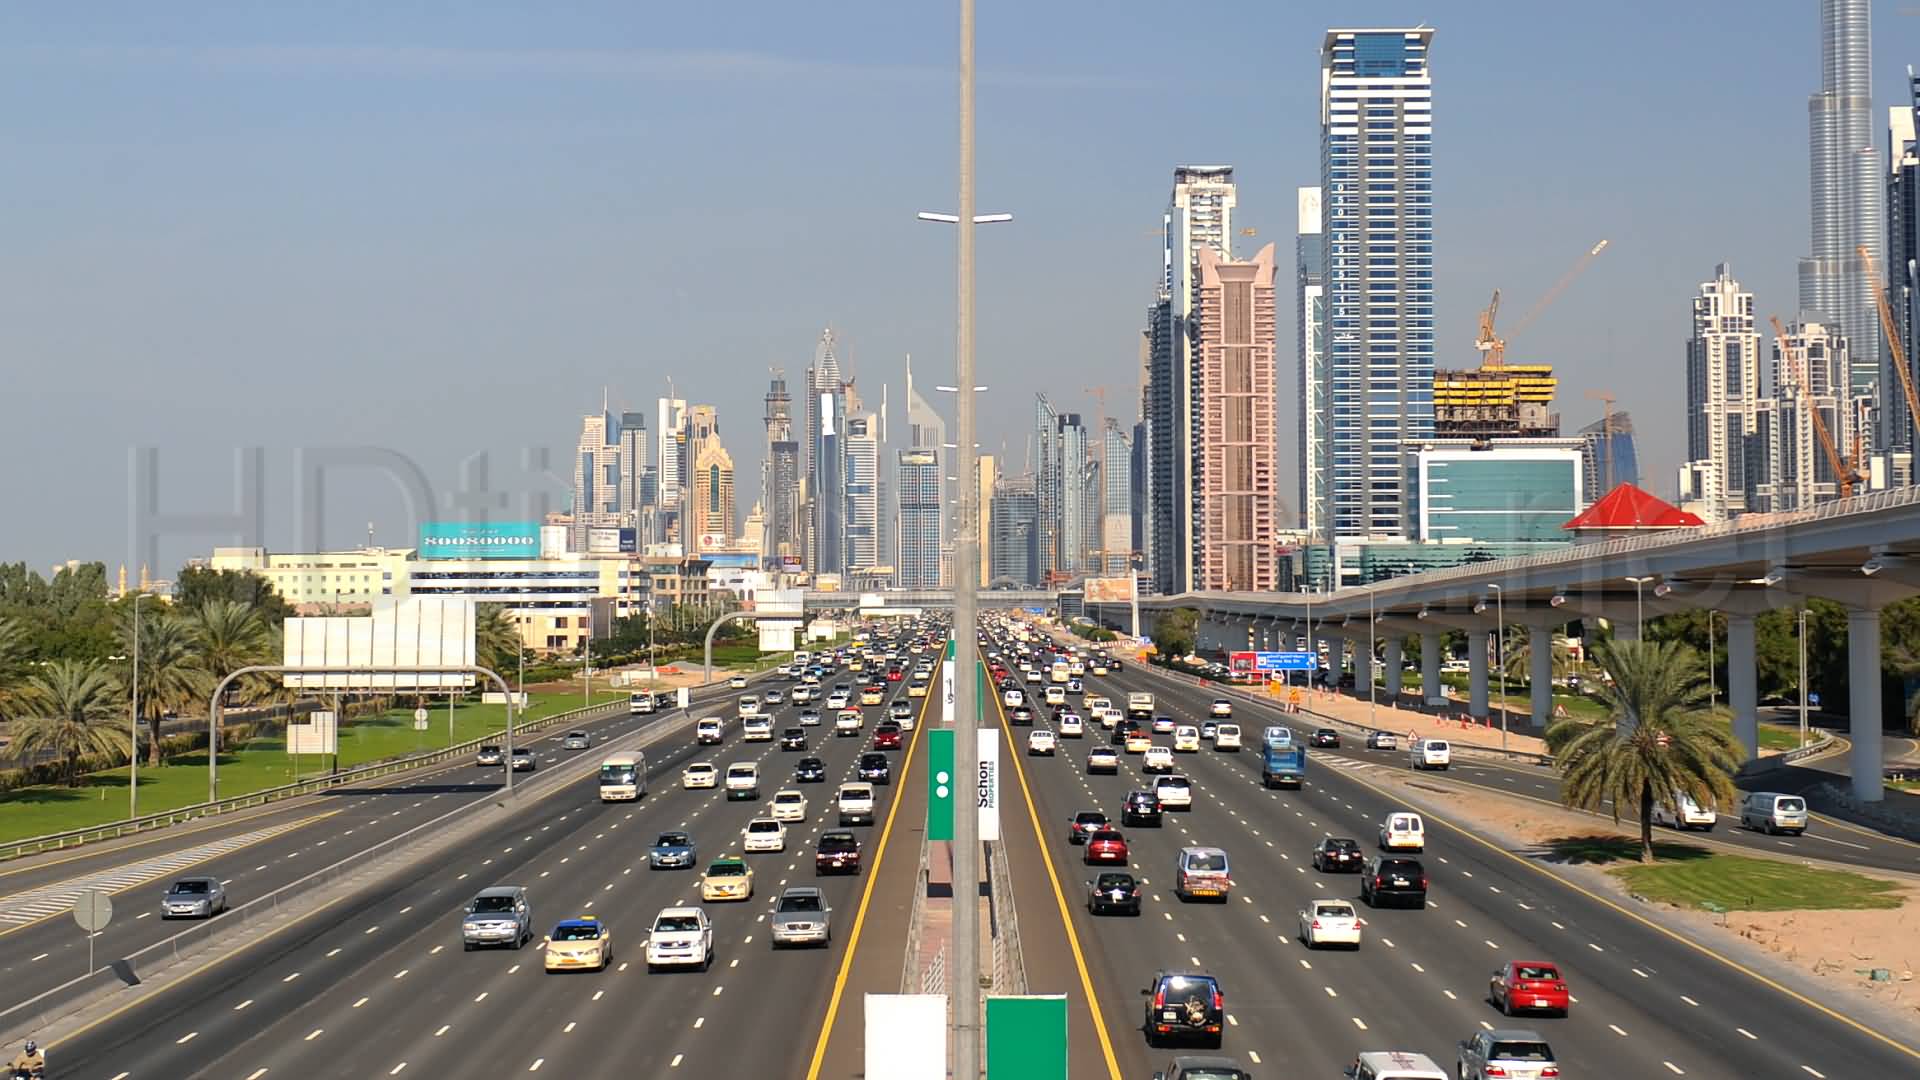 الكشف عن حزمة من المشروعات والأنظمة الذكية للحد من الحوادث في دبي